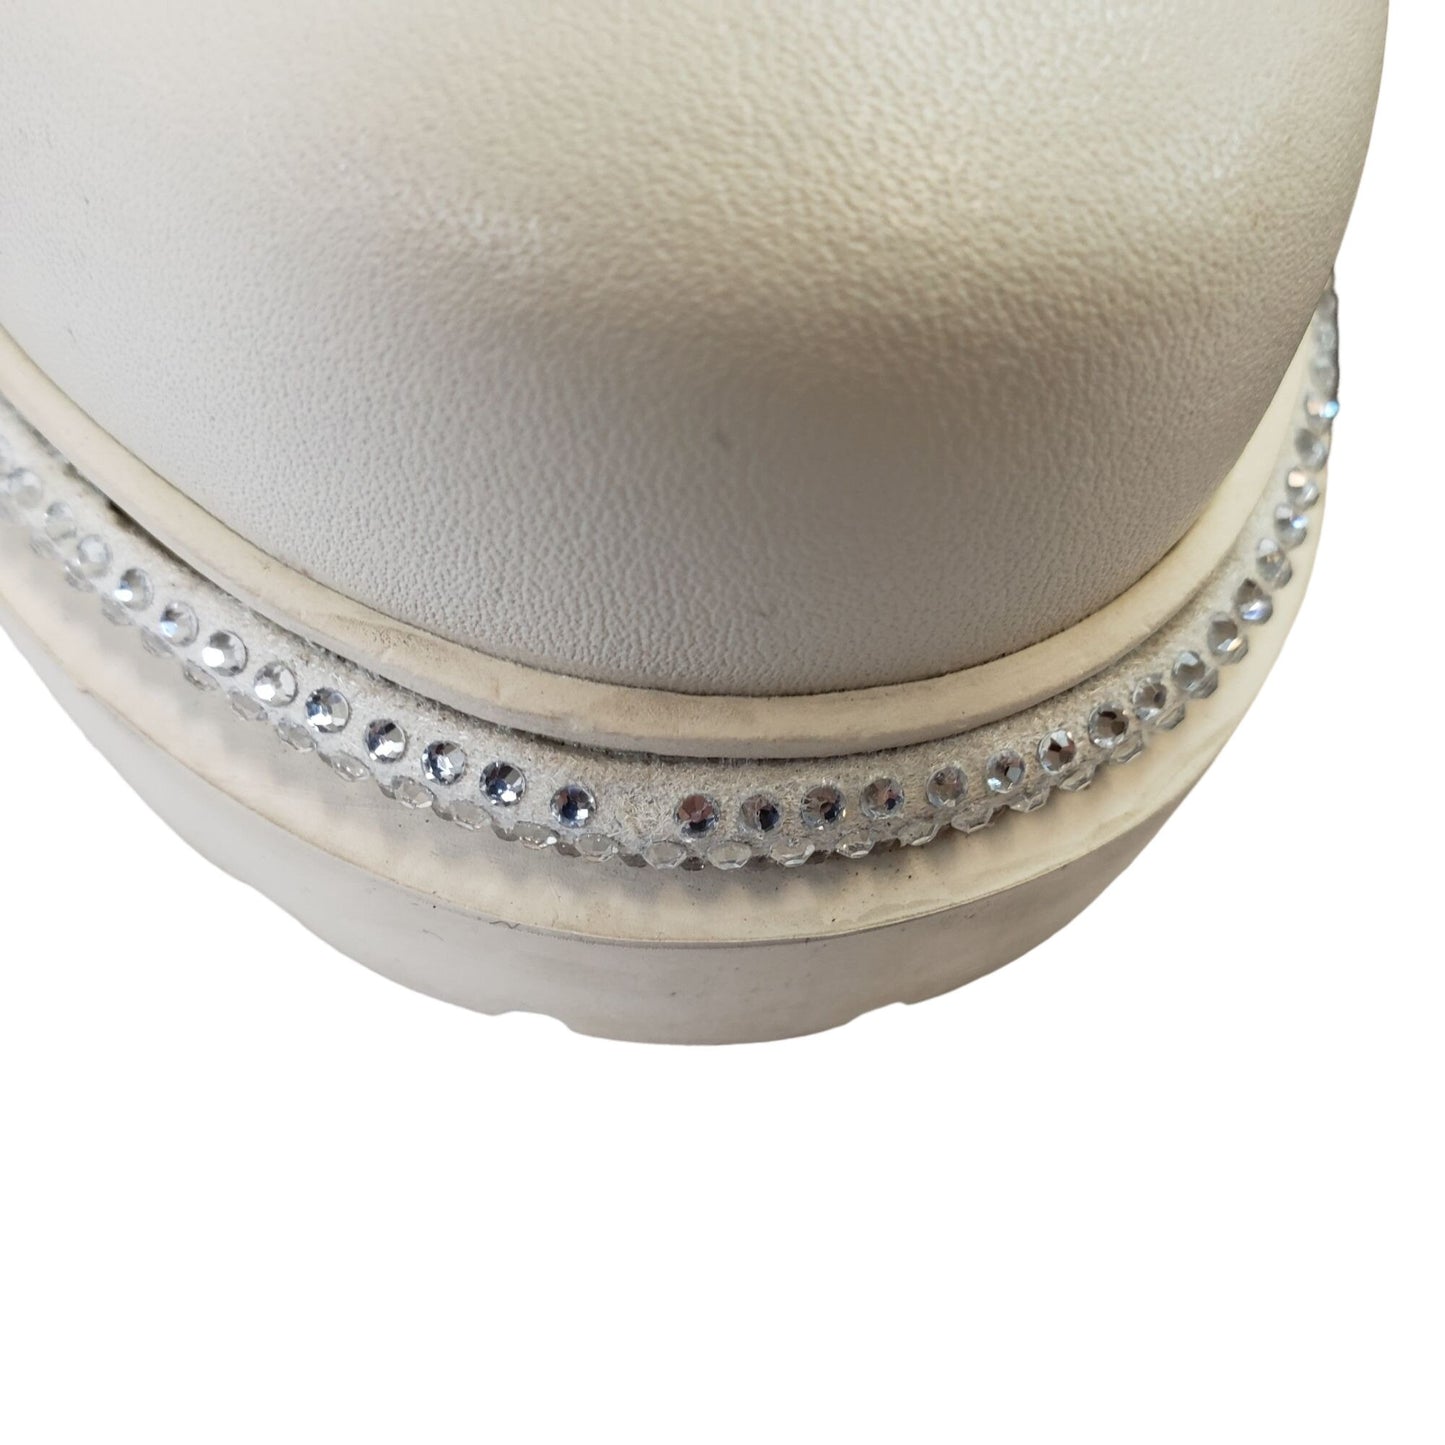 Unbranded Vegan Leather Crystal Embellished Chelsea Snake Boots Size 39/8.5 US